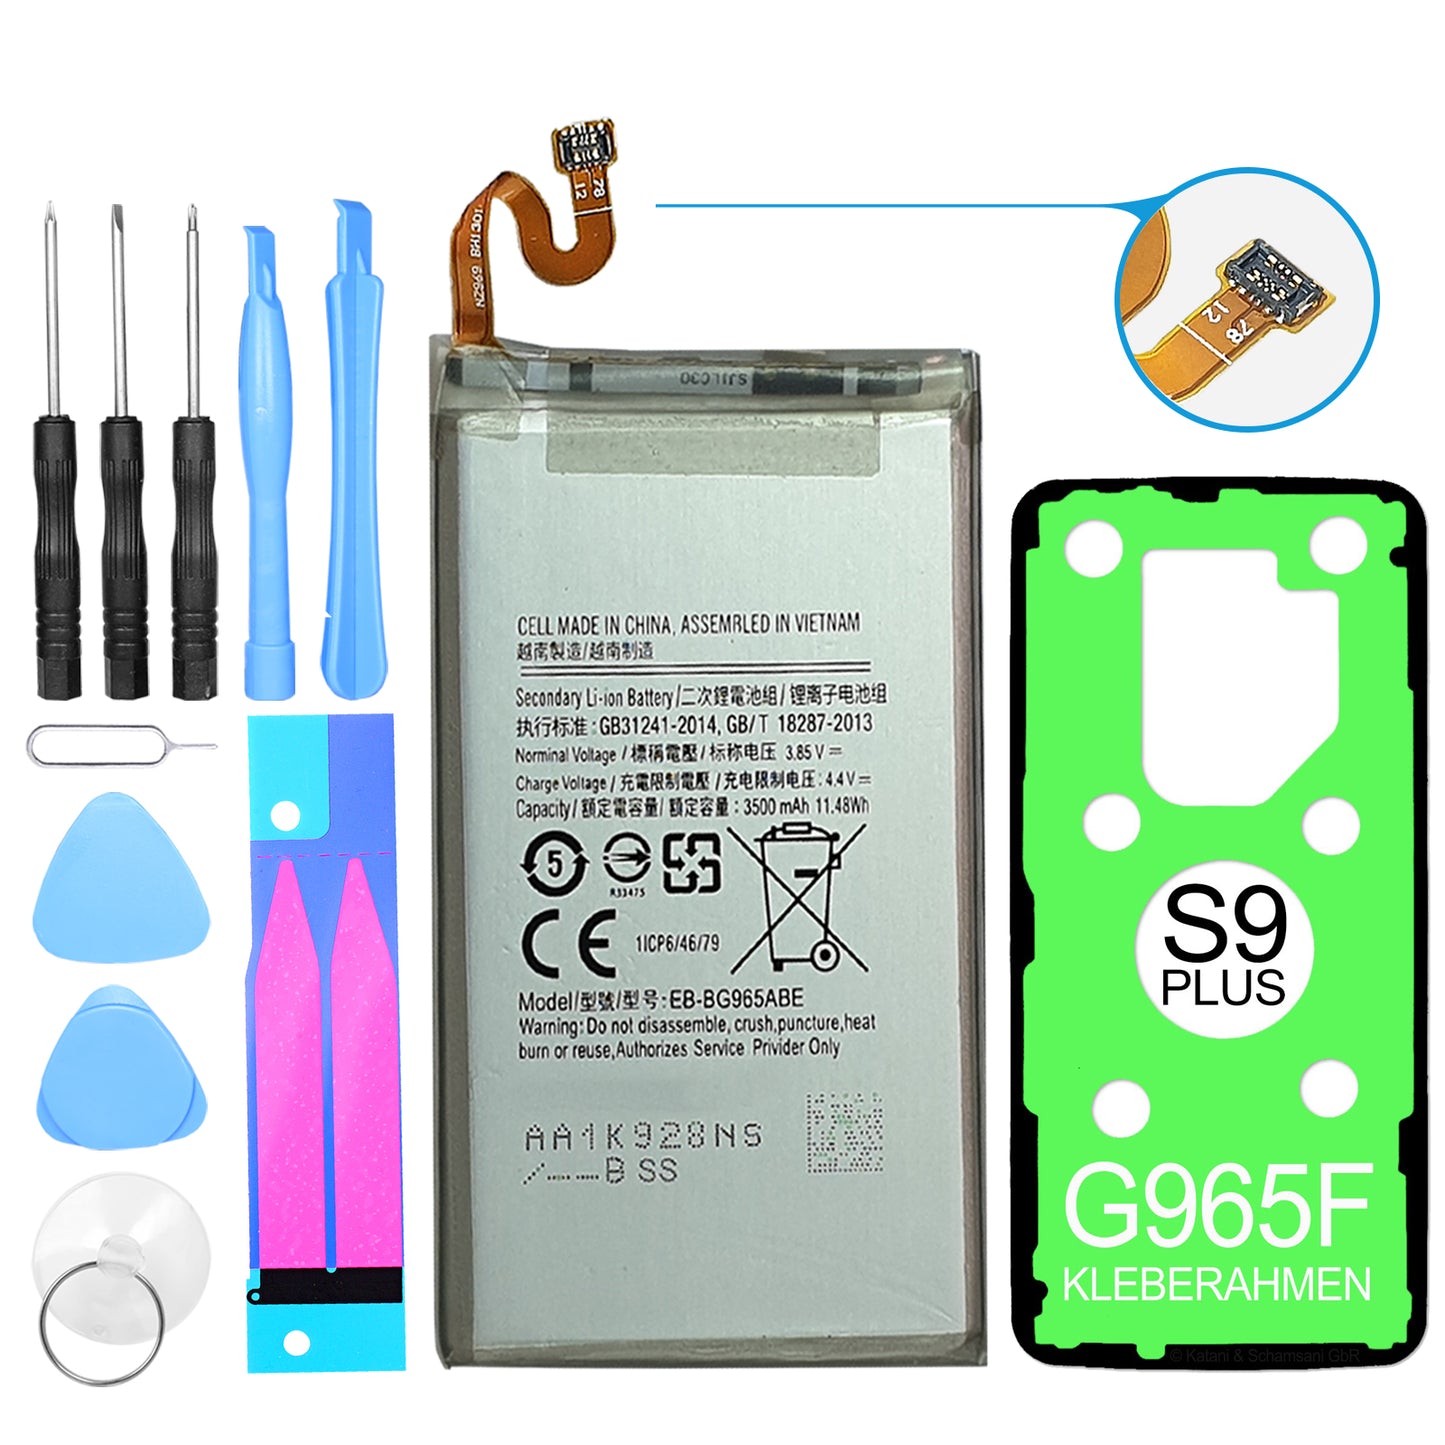 Hochwertiger EB-BG965ABE Akku inklusive Werkzeugset und Kleberahmen. Passend für das Samsung Galaxy S9 Plus SM-G965. Einfache Selbstinstallation.